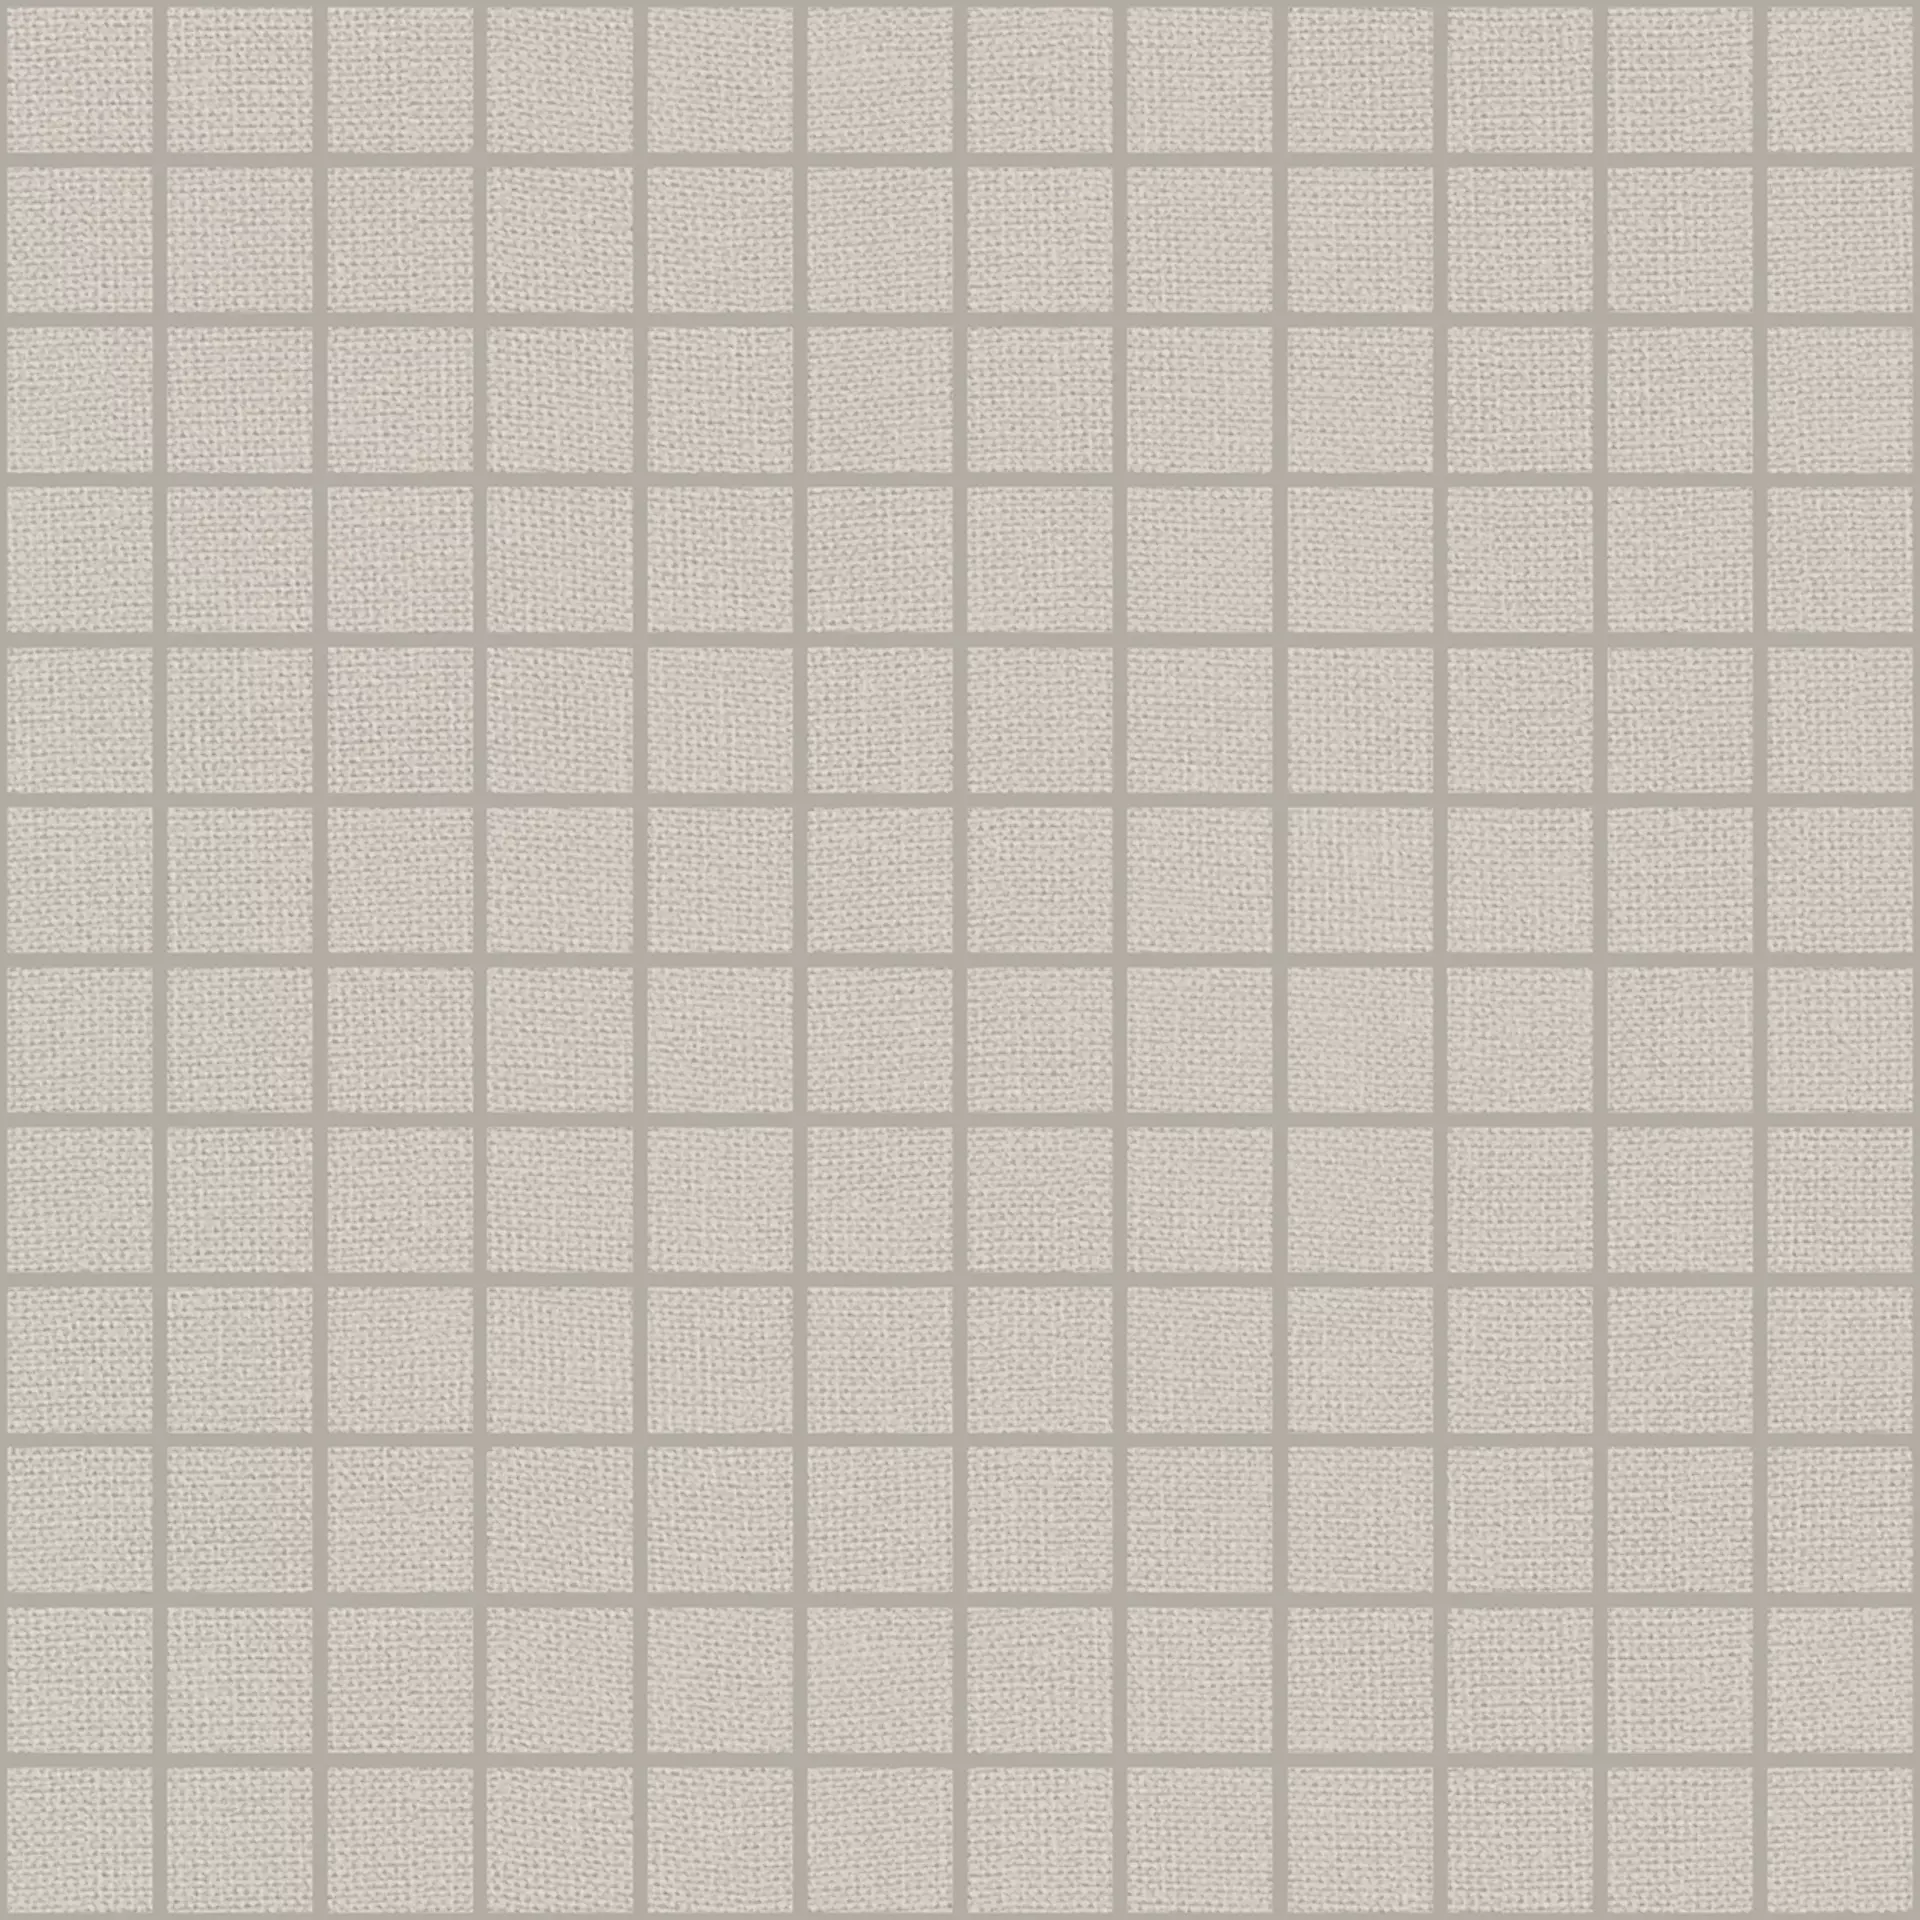 Wandfliese Marazzi Outfit Grey Naturale – Matt Grey M18H matt natur 30x30cm Mosaik 10mm